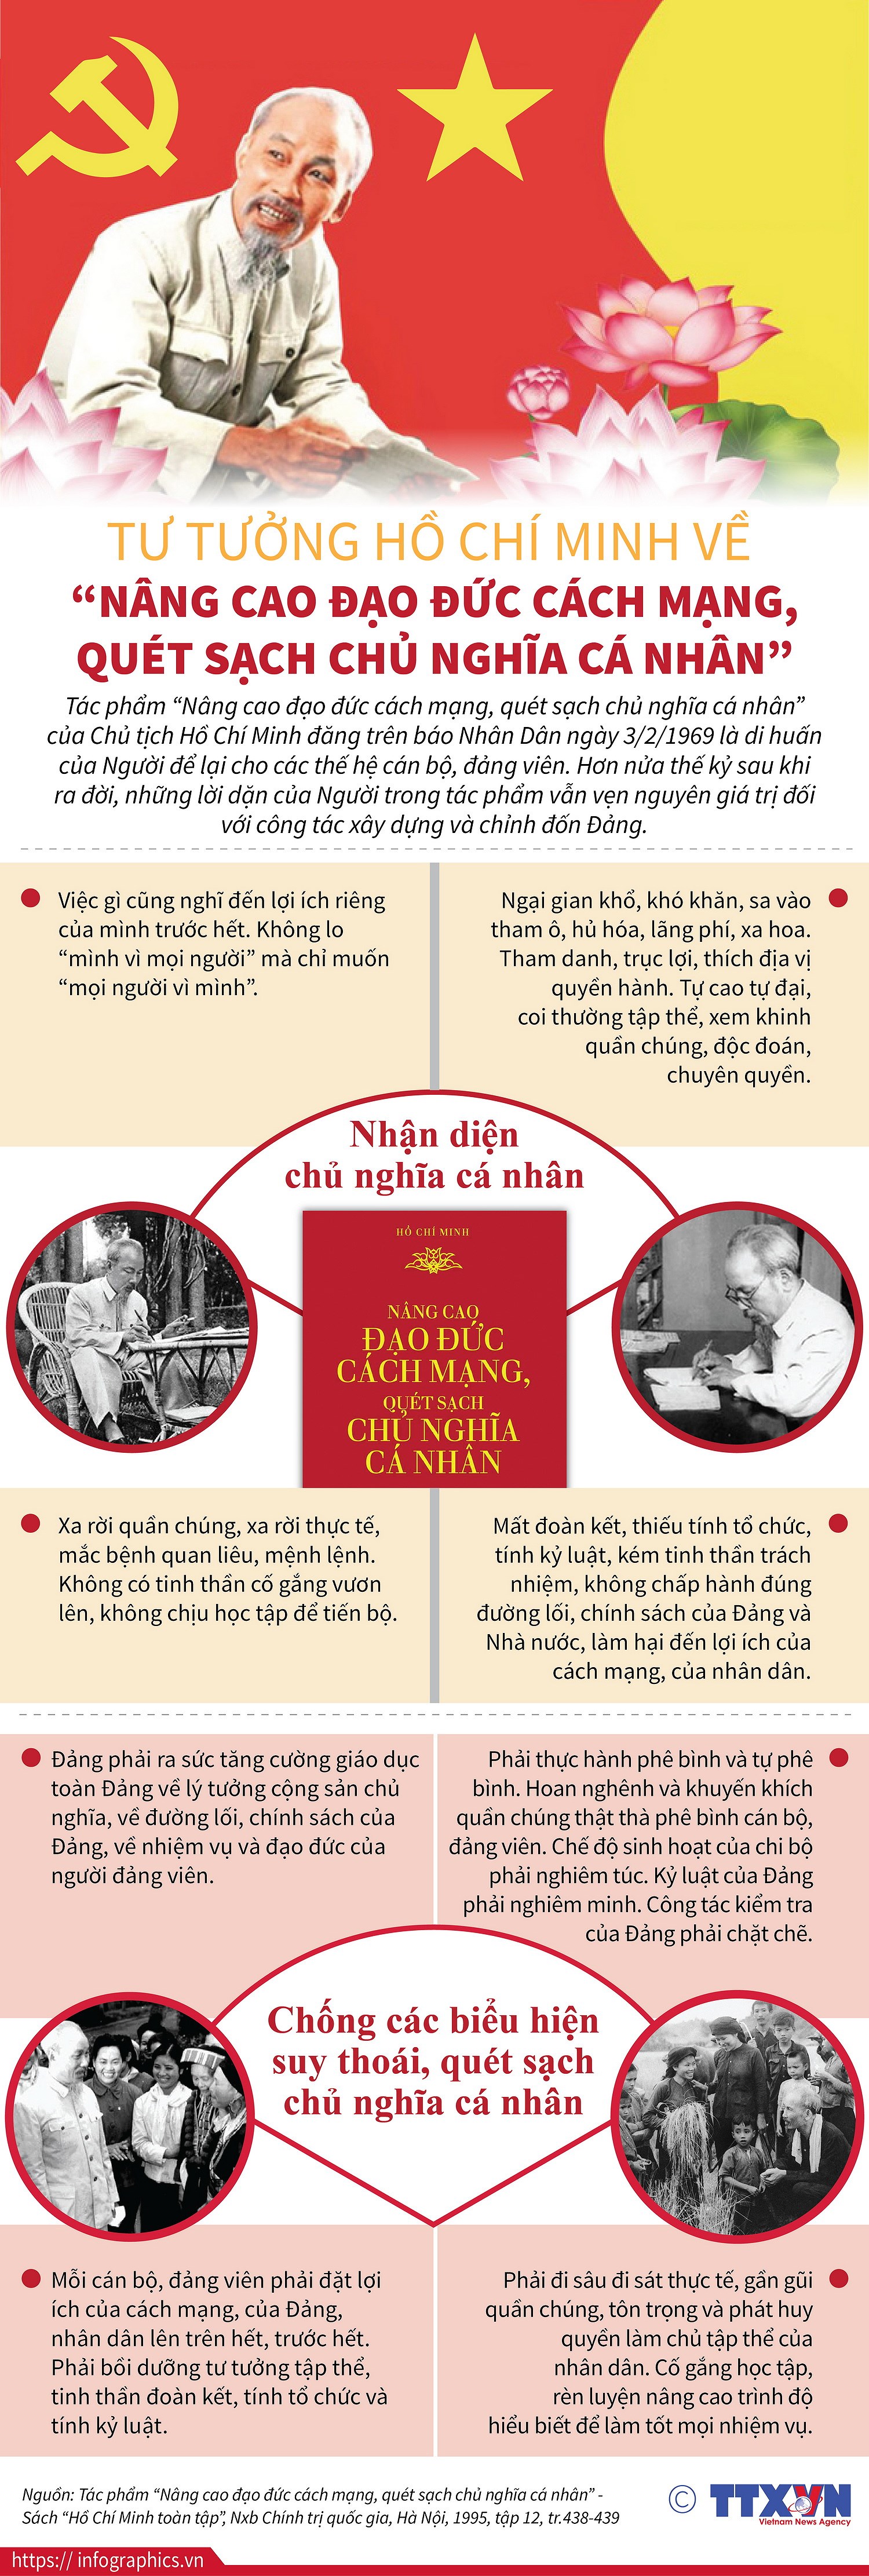 [Infographics] Tu tuong Ho Chi Minh ve nang cao dao duc cach mang hinh anh 1